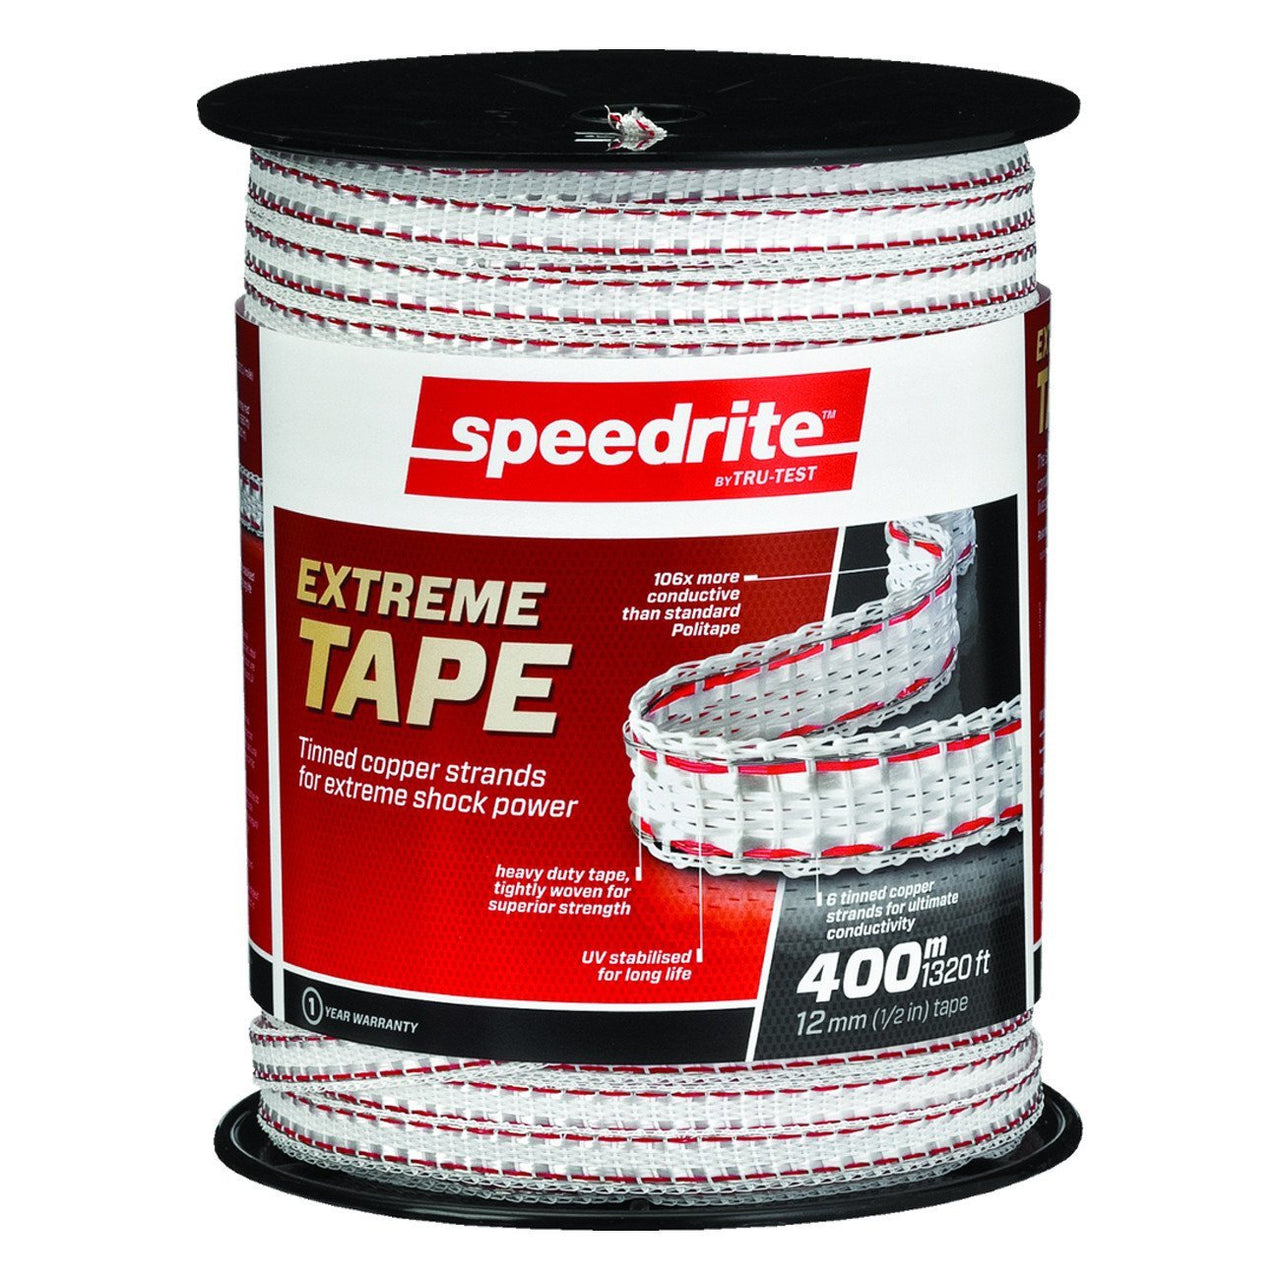 Speedrite 1/2 Extreme Tape 1320 - Fencing Speedrite - Canada